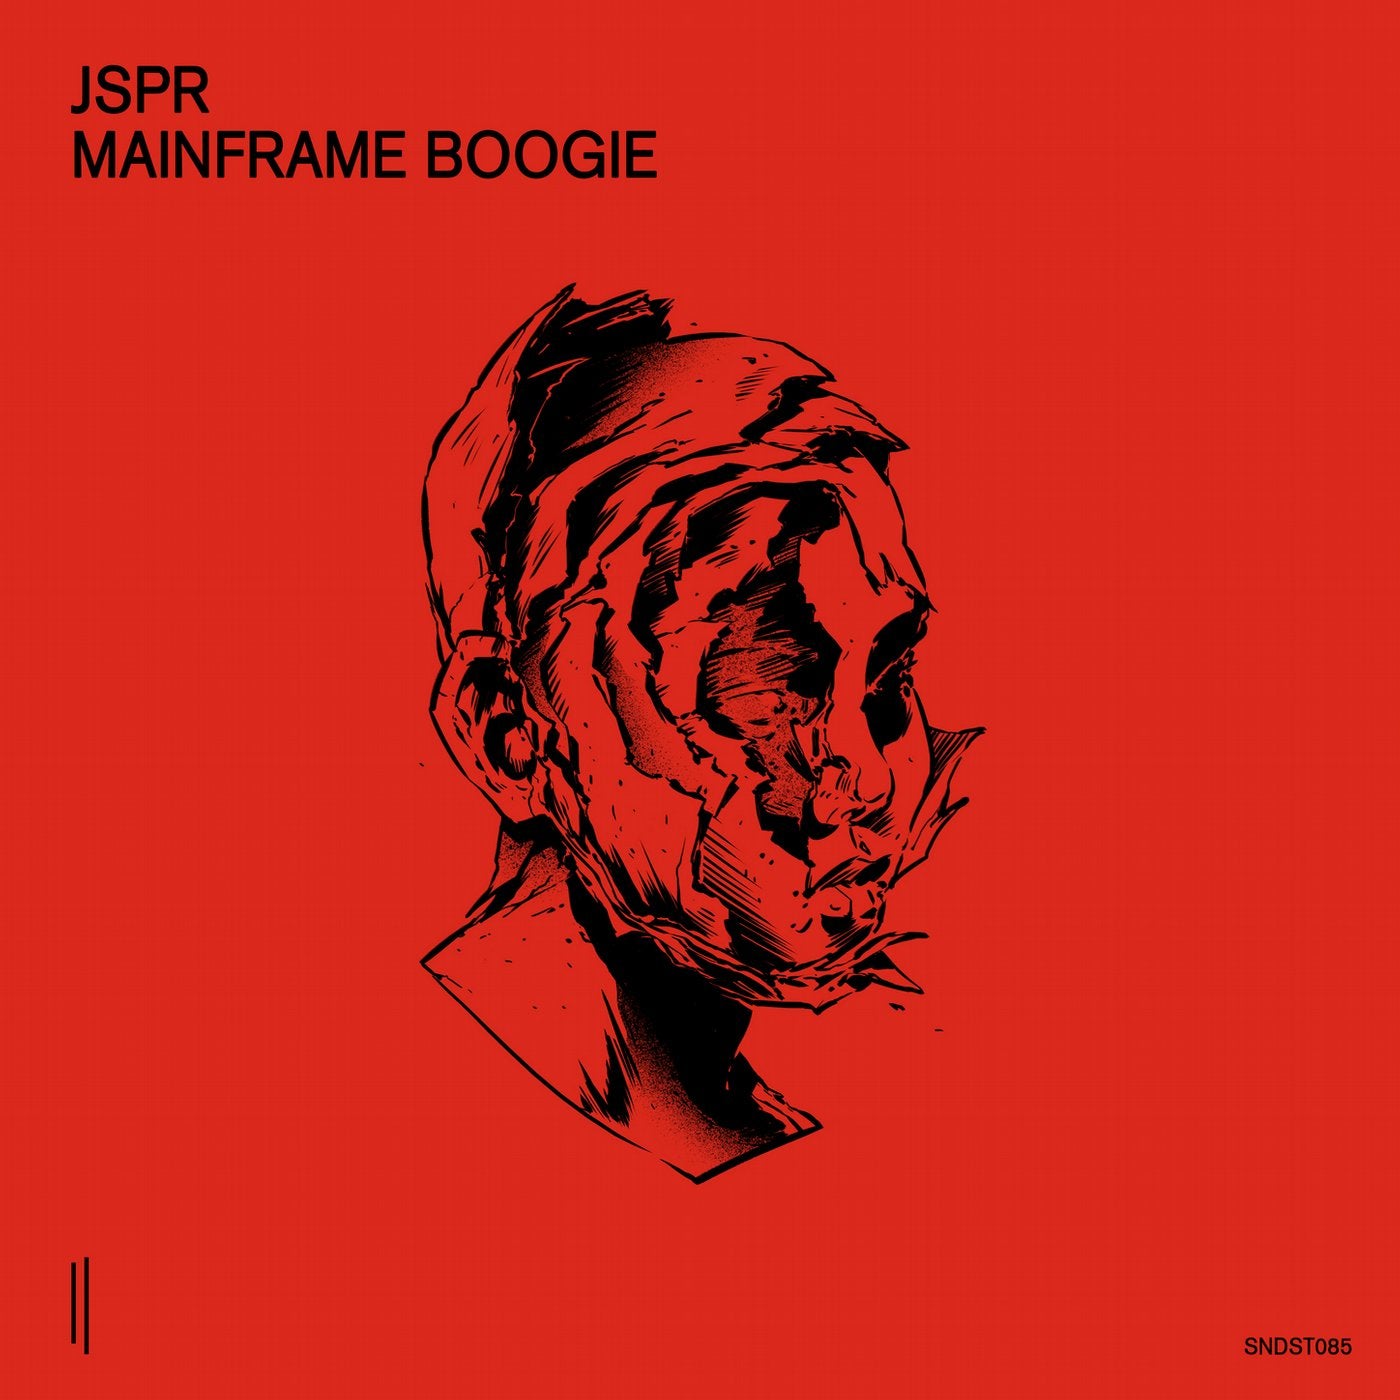 Mainframe Boogie